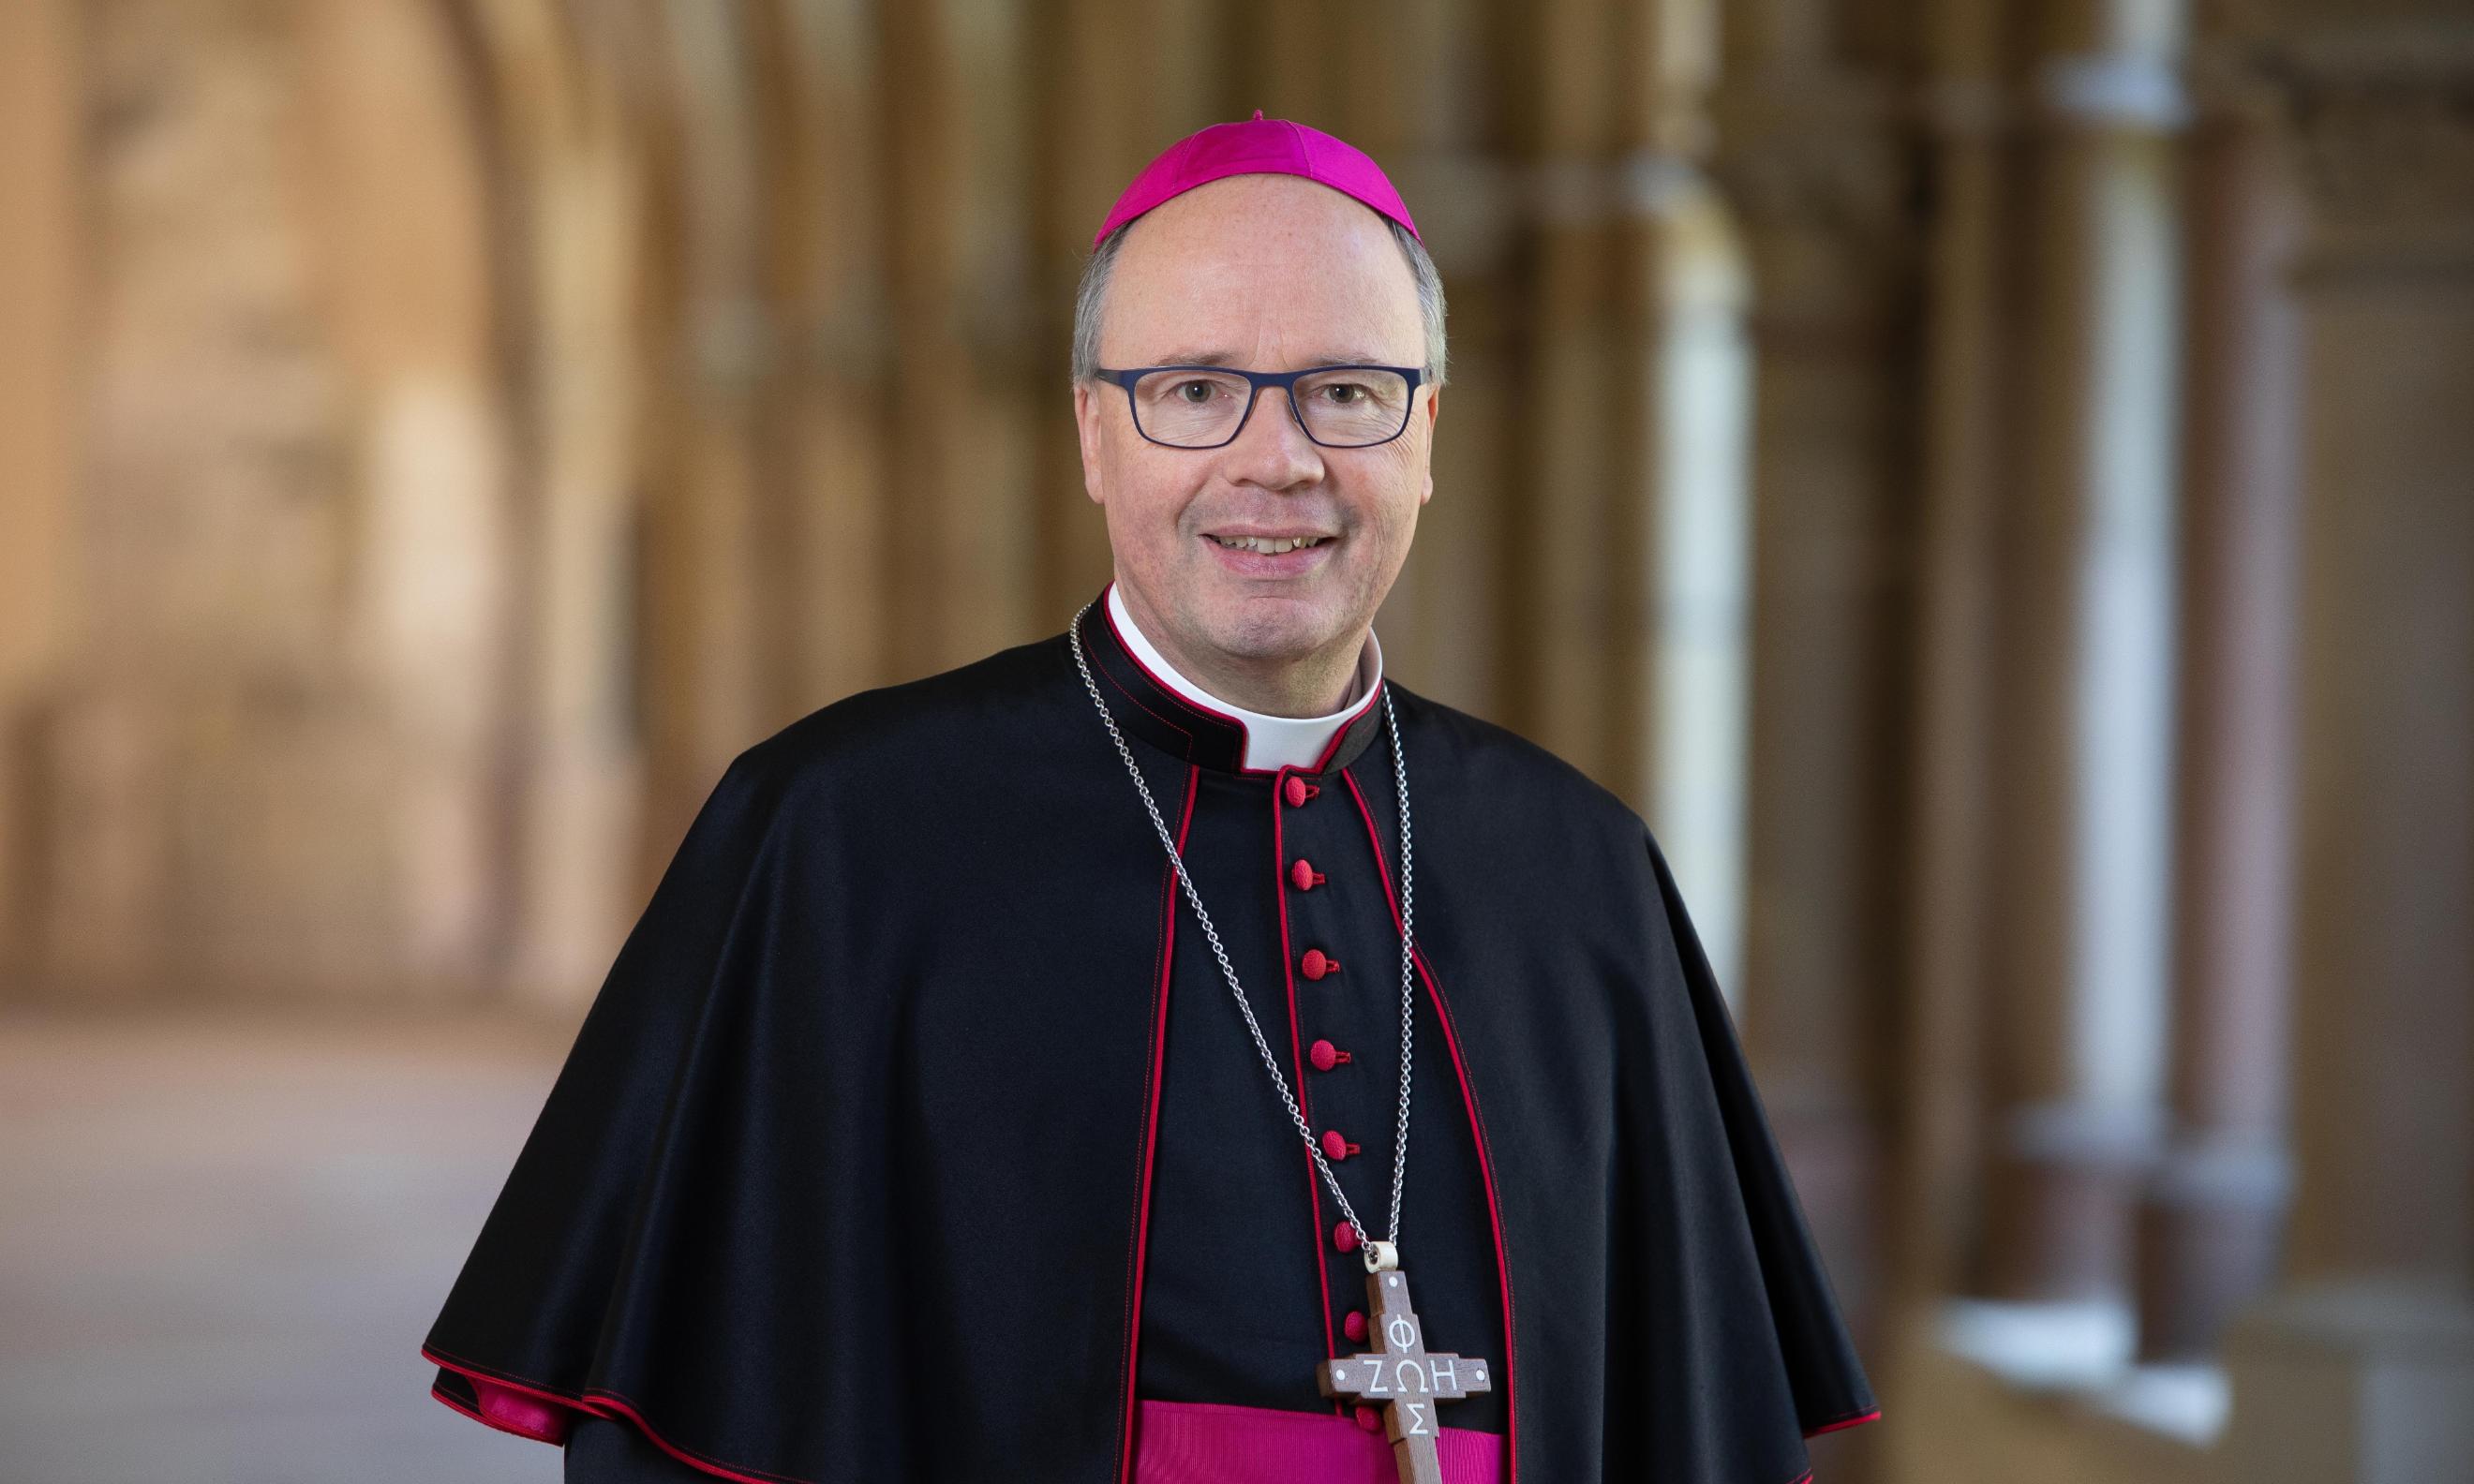 Hier ist ein Portrait von Bischof Ackermann, lächelnd im Kreuzgang zu sehen. Er Trägt ein Ornat.